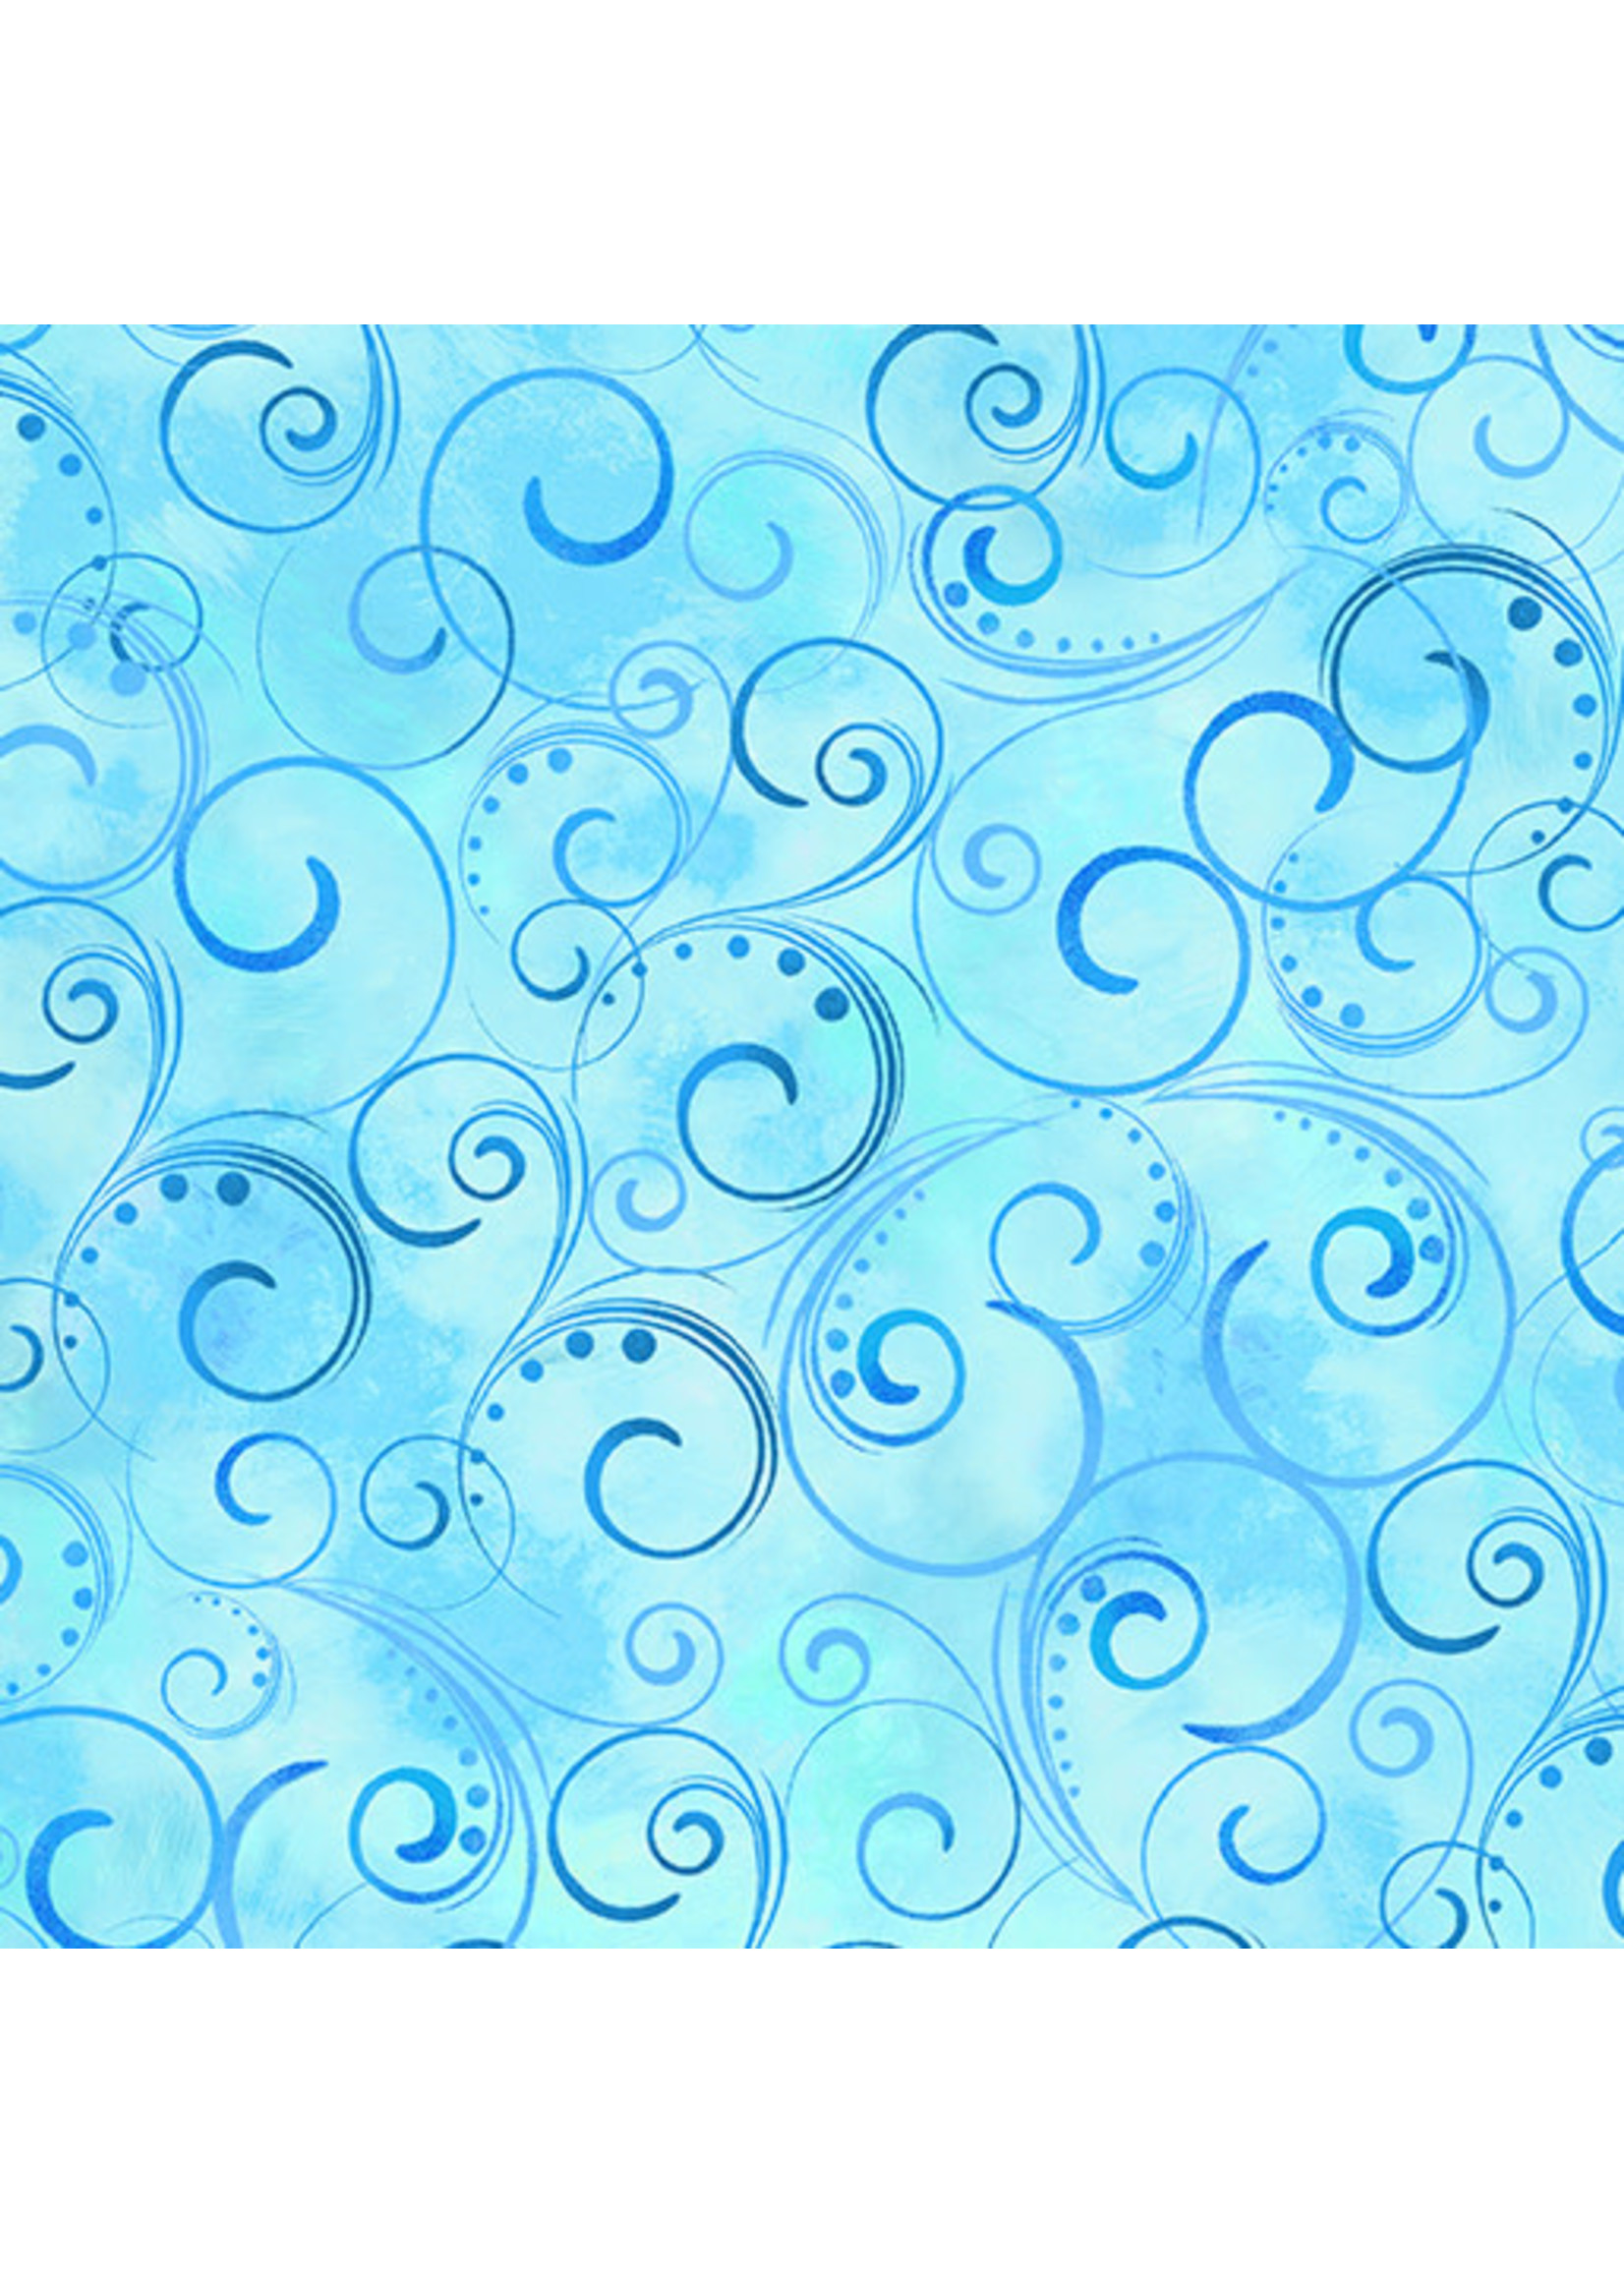 Kanvas Studio Swirling Splendor - Blue